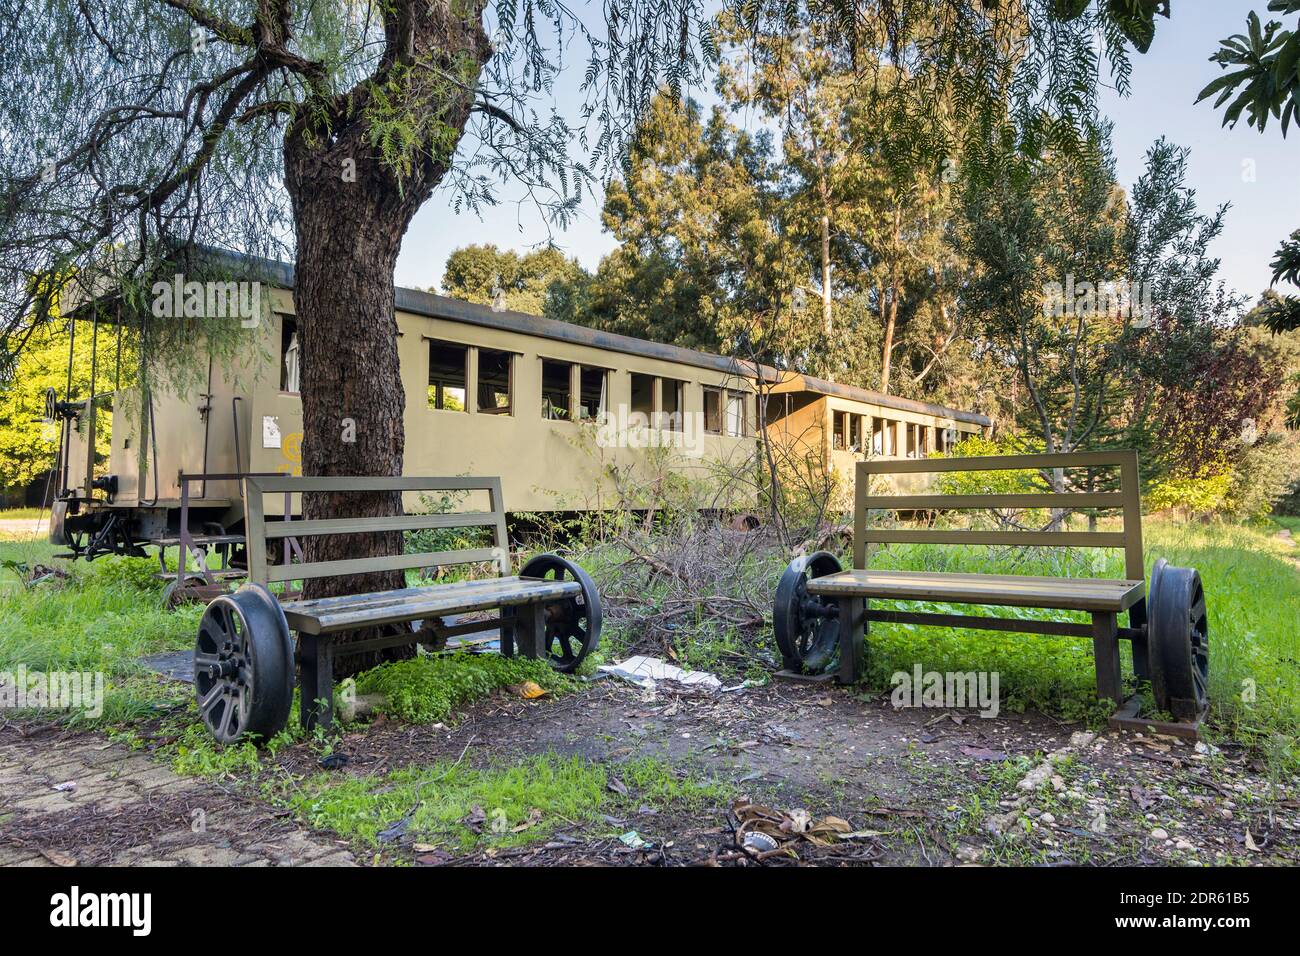 Panchine con ruote ferroviarie nella vecchia stazione ferroviaria abbandonata di Beirut, Mar Mikhael, Libano Foto Stock